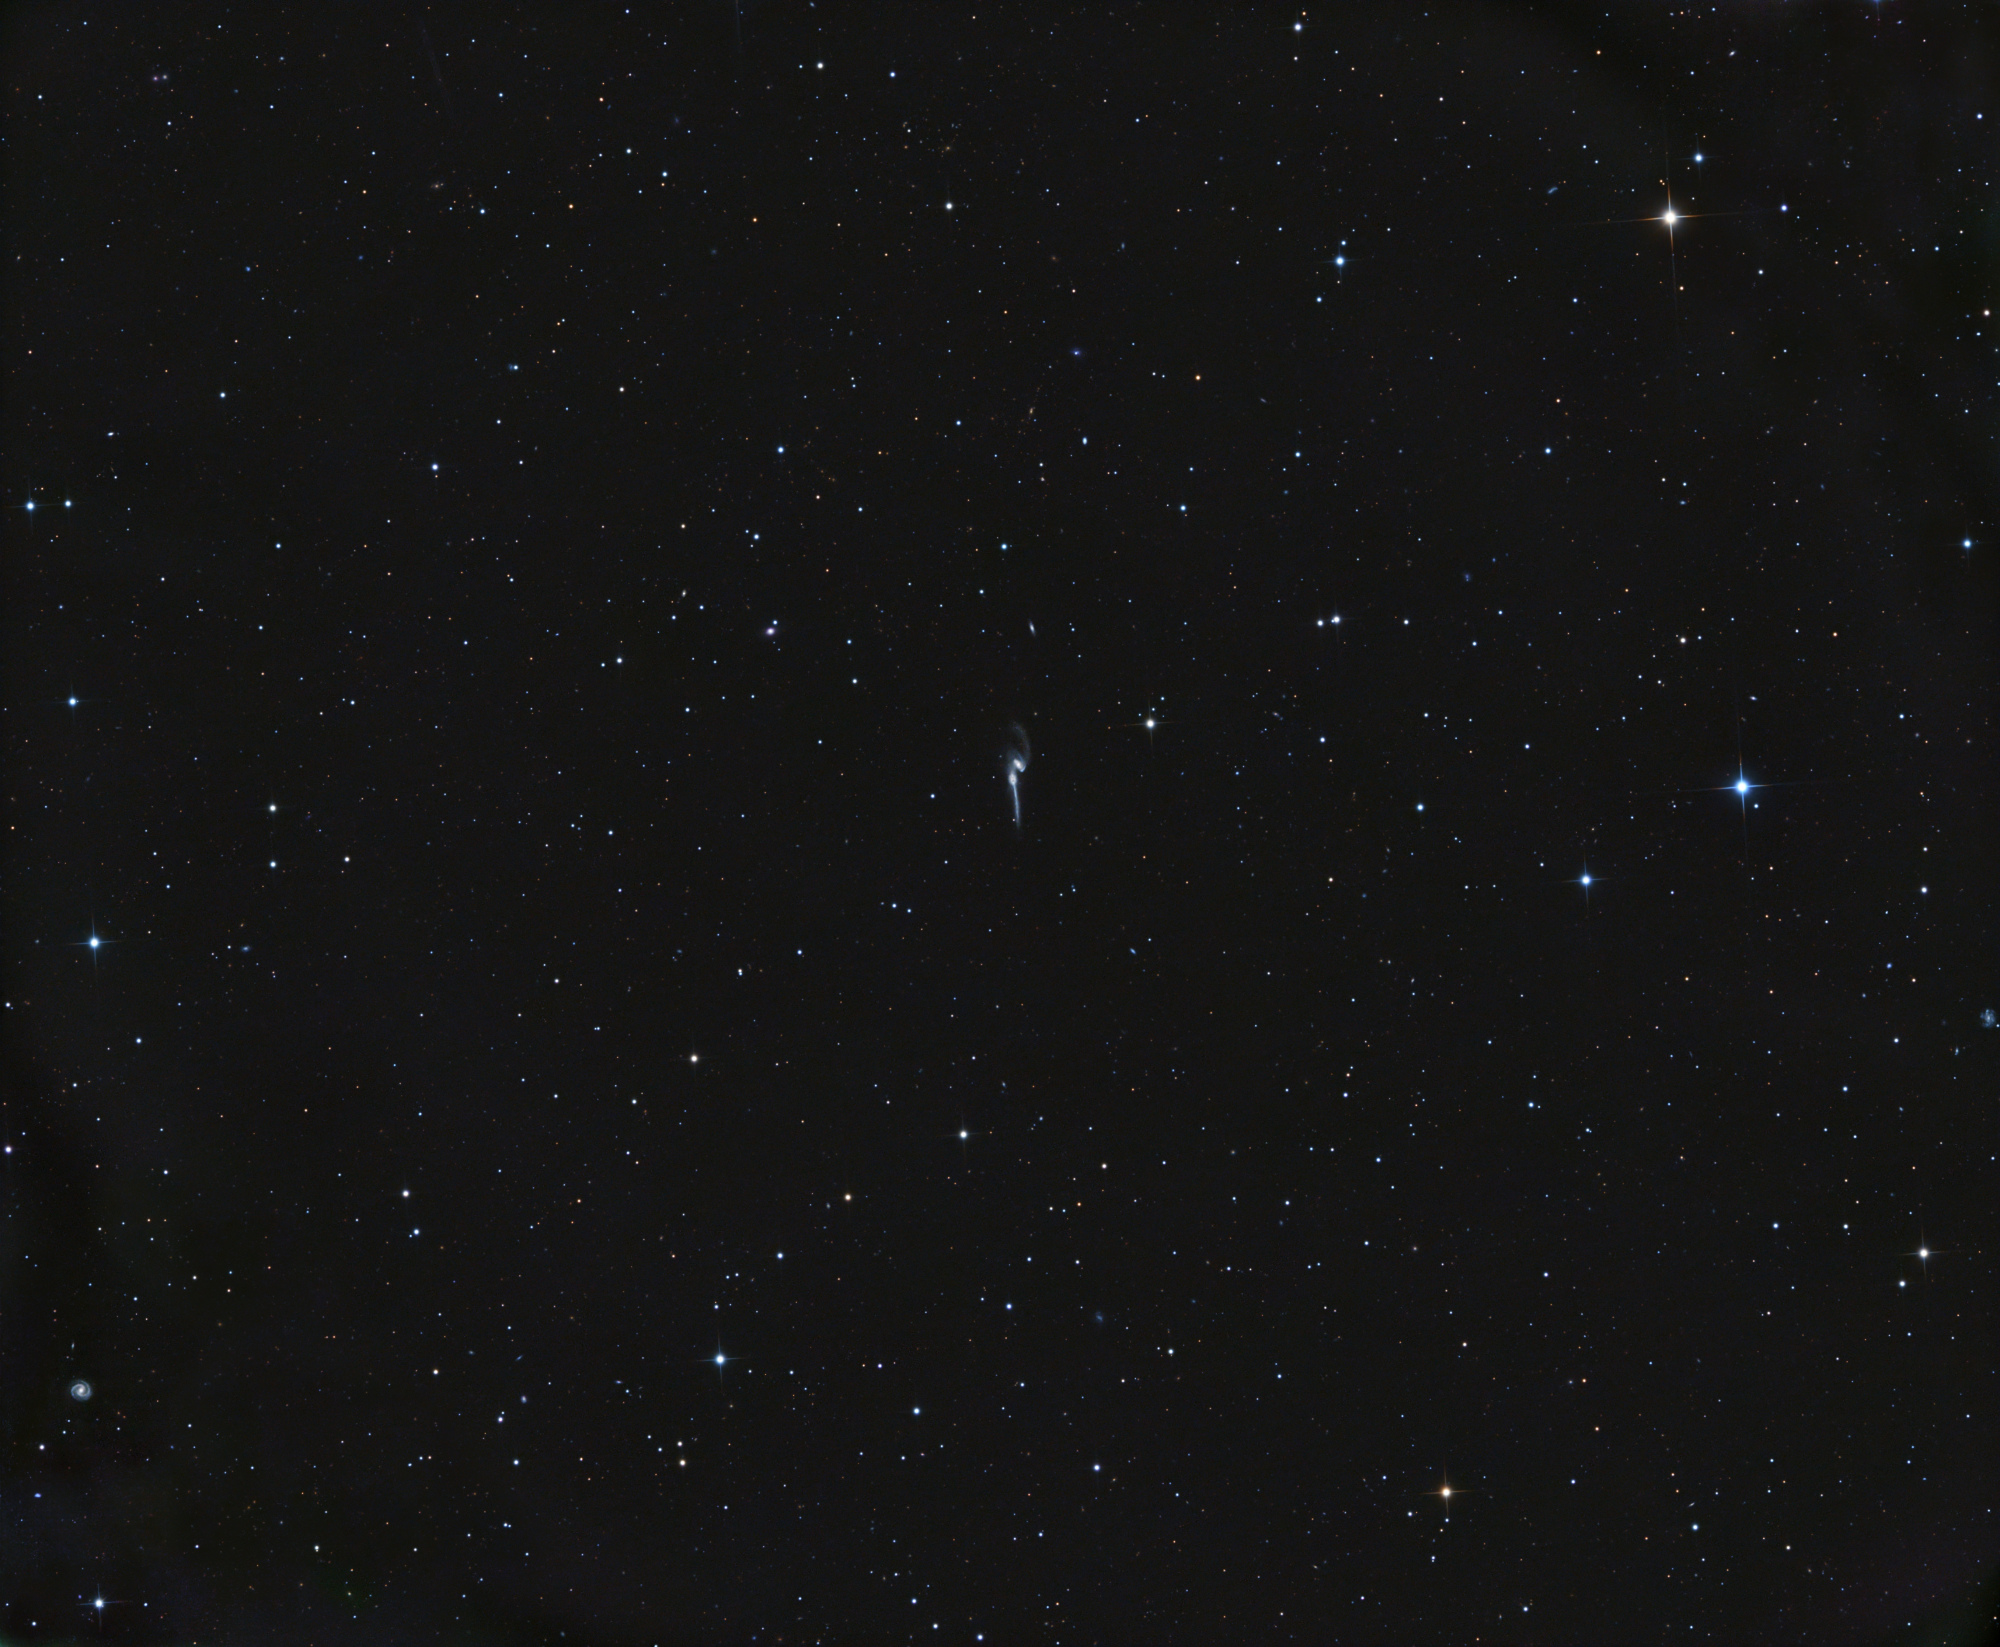 65c7c515cd90e_NGC4676_Antlia-L_FinPix_Rduit.thumb.jpg.f79dc20e96e5210985f3dbe5e2884447.jpg